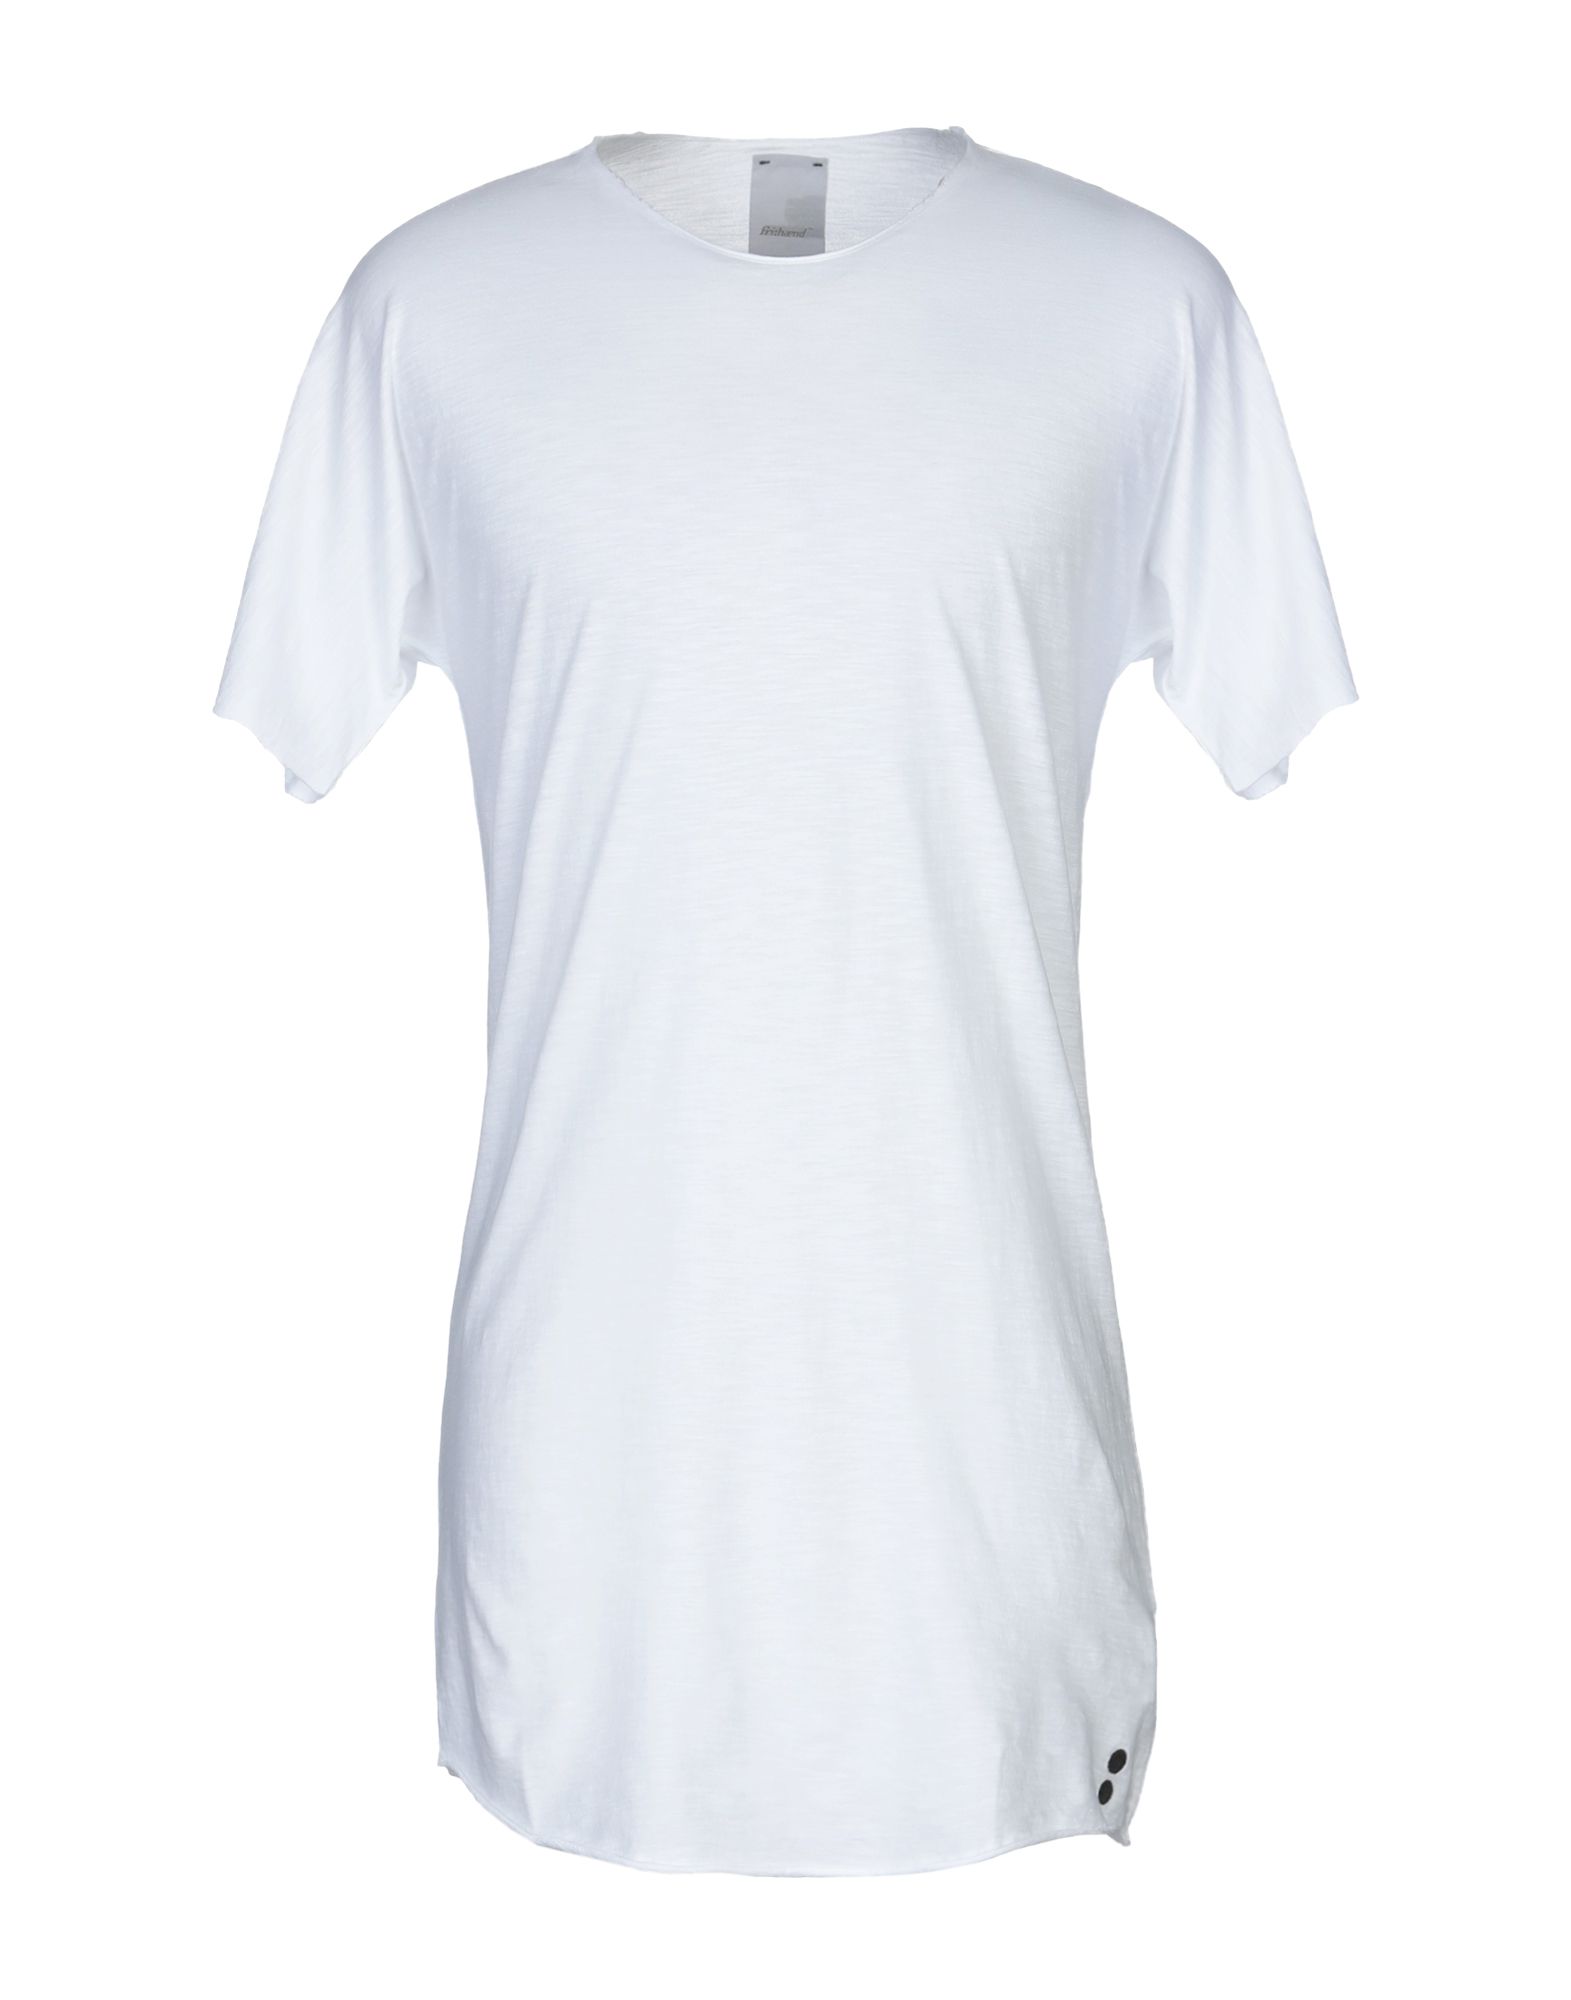 《送料無料》FRI: HAEND メンズ T シャツ ホワイト XL コットン 100%